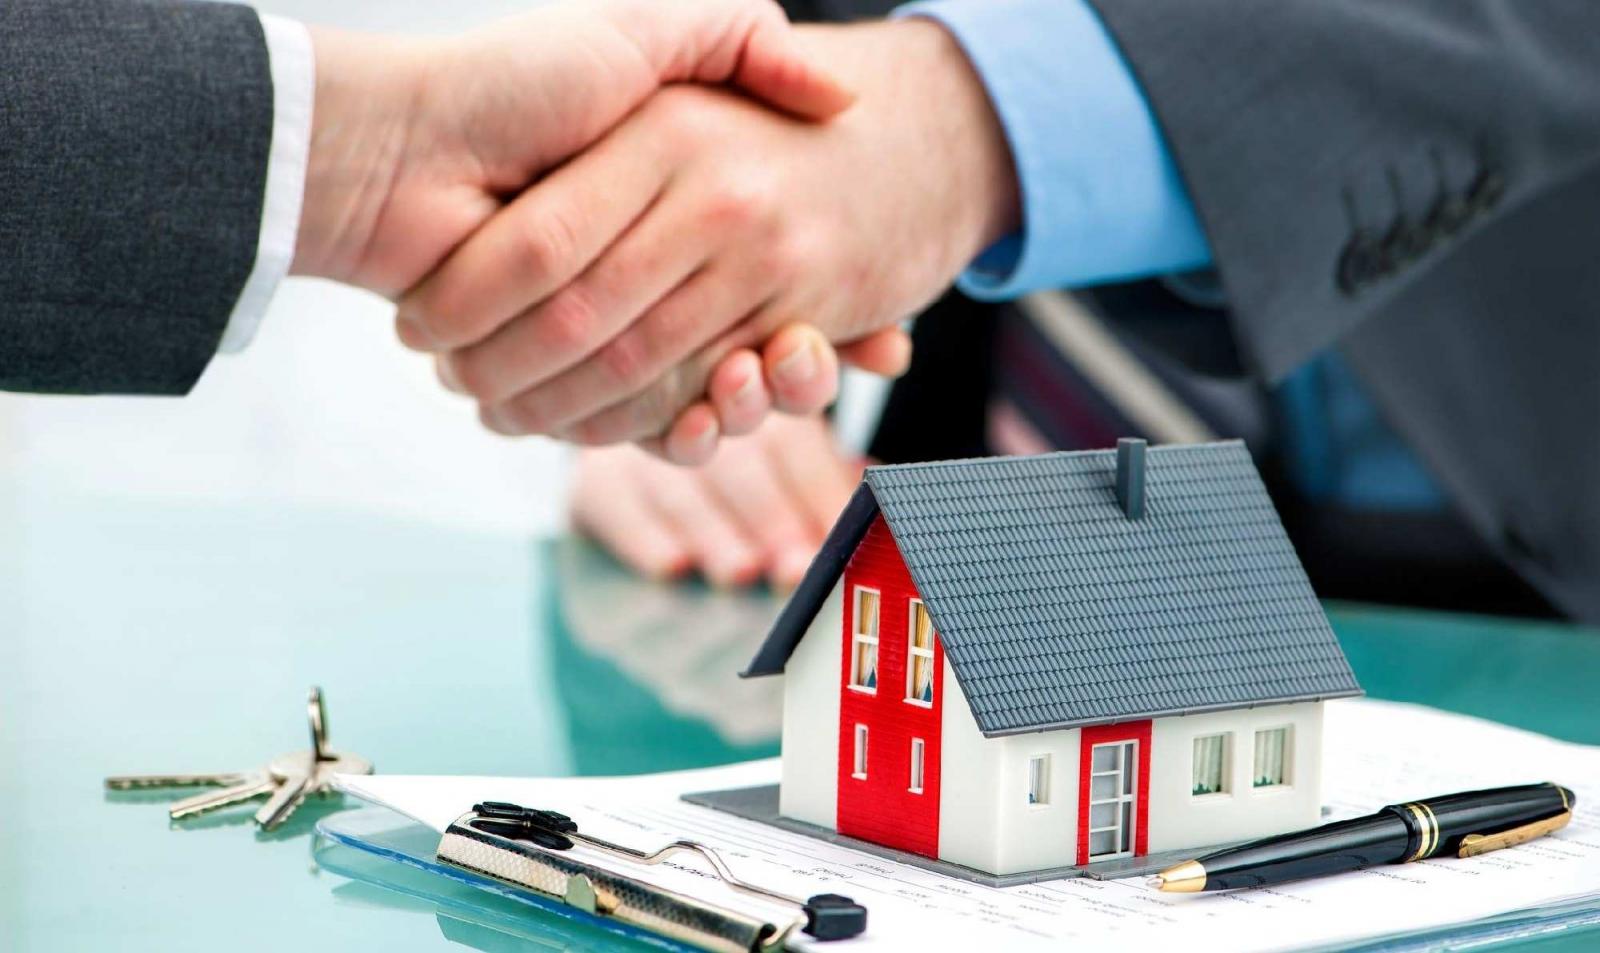 Hợp đồng mua bán nhà ở phải ghi đúng giá chuyển nhượng thực tế